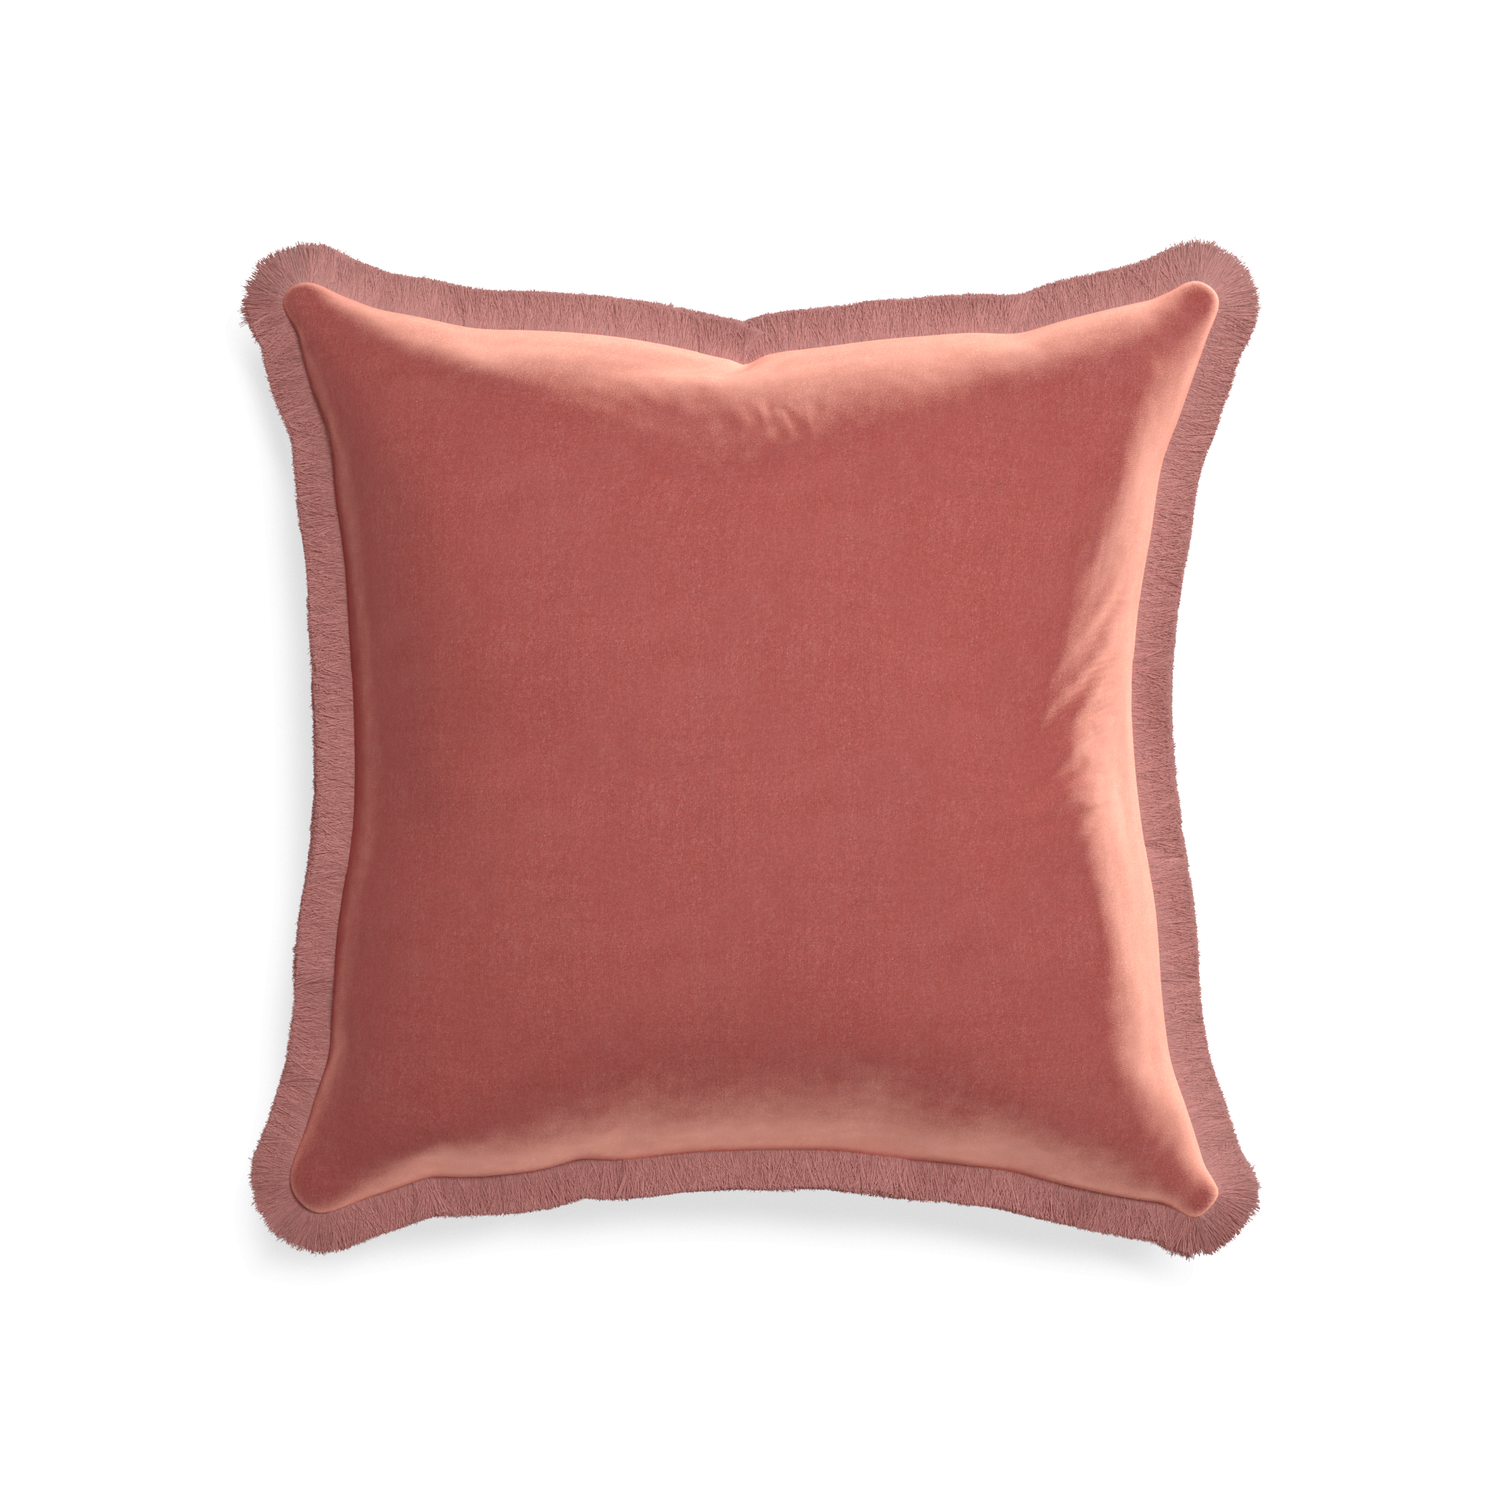 20-square cosmo velvet custom pillow with d fringe on white background